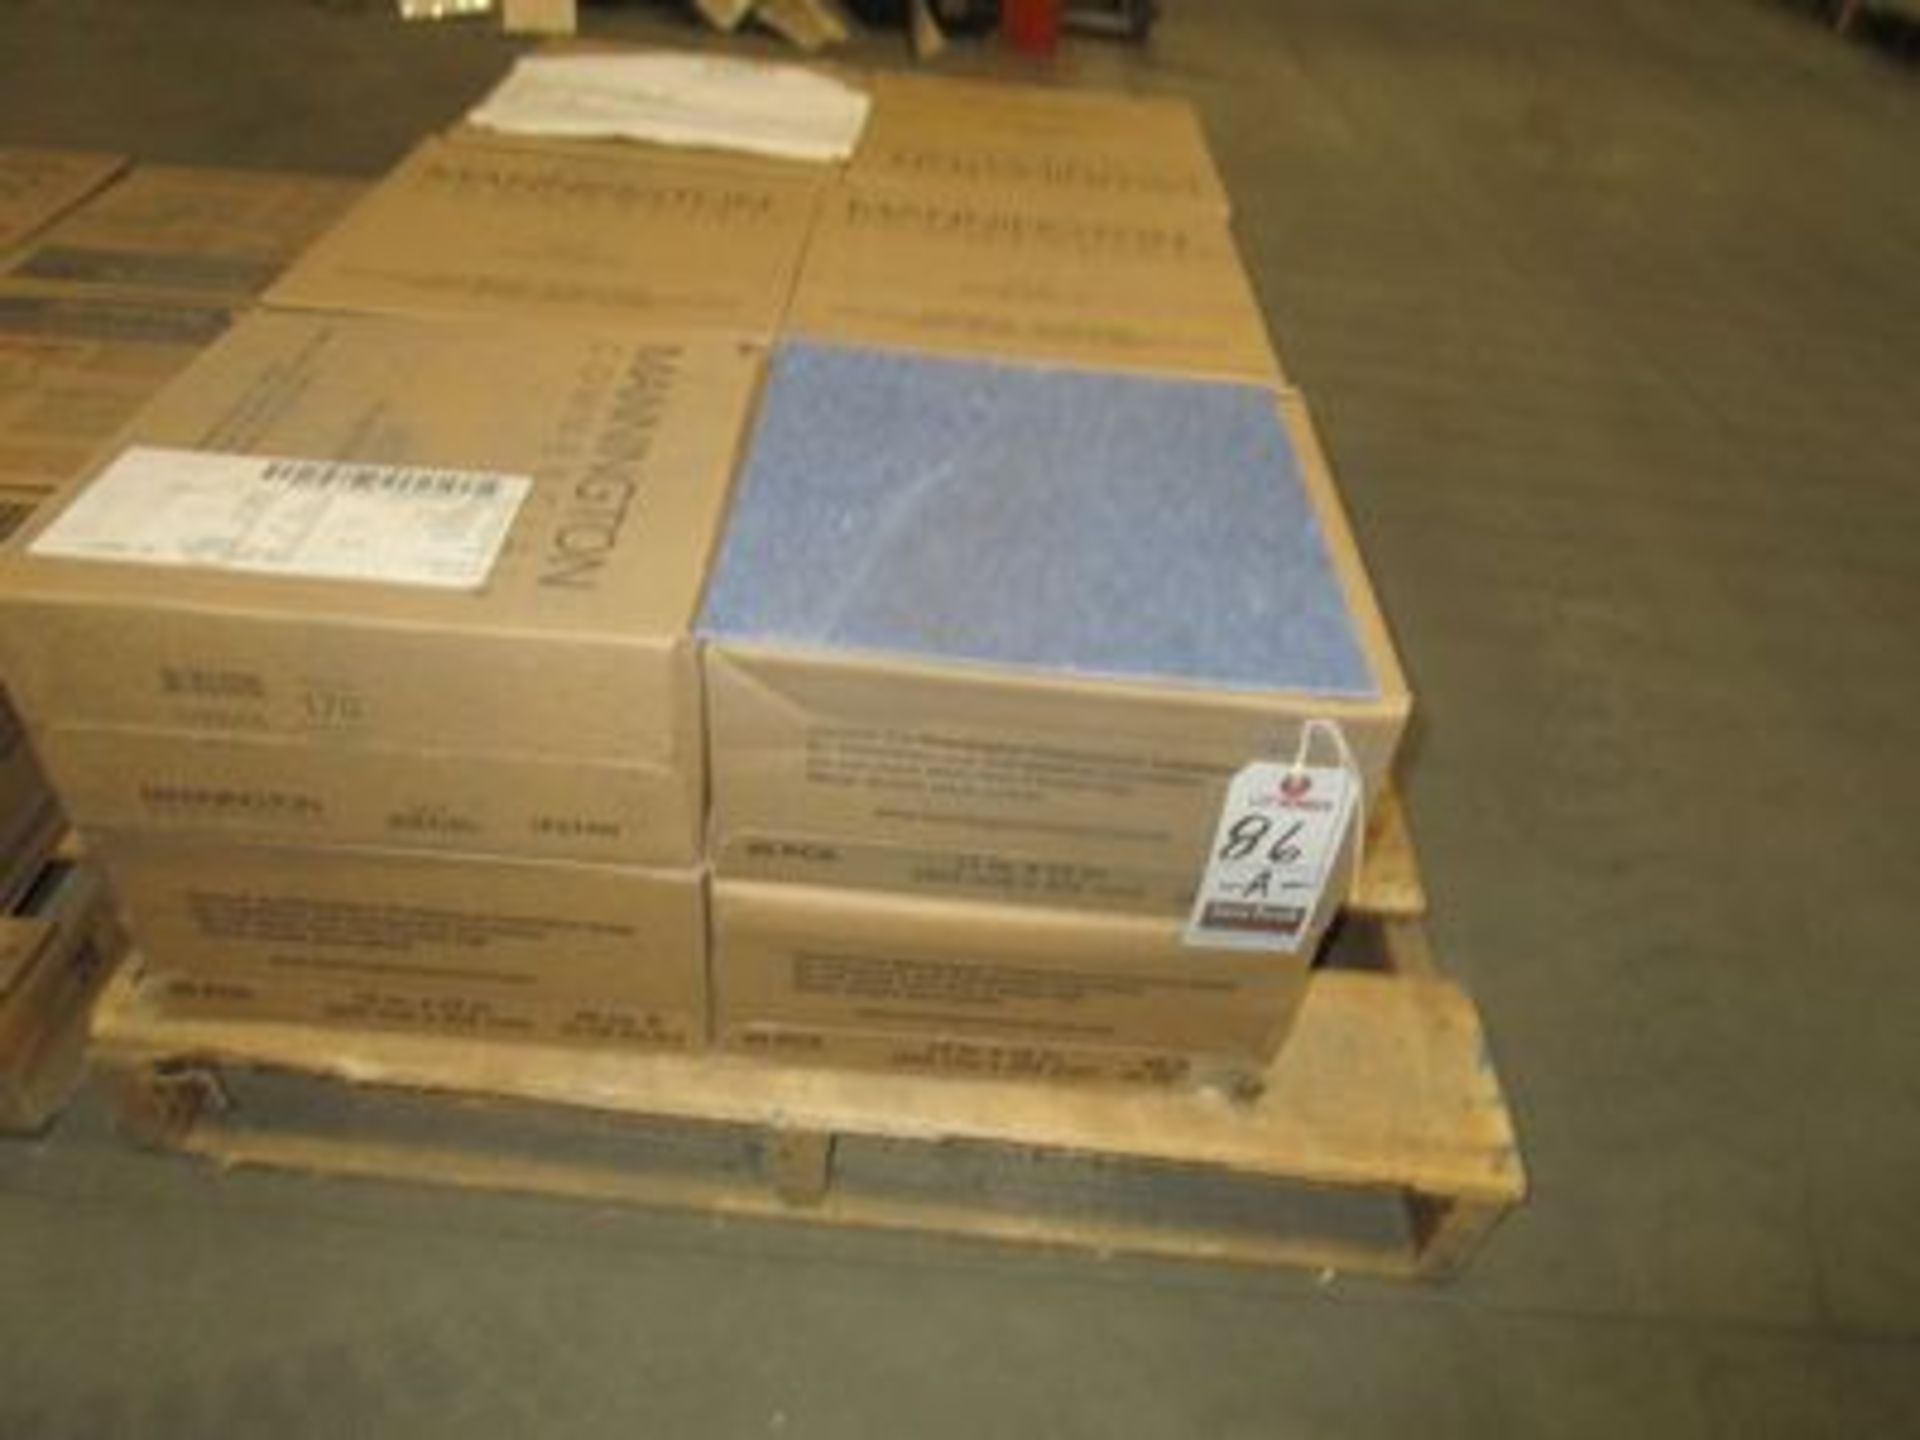 BOXES MANNINGTON 12"X12" DUCHESS BLUE VINYL TILE, (45 S/F PER BOX)